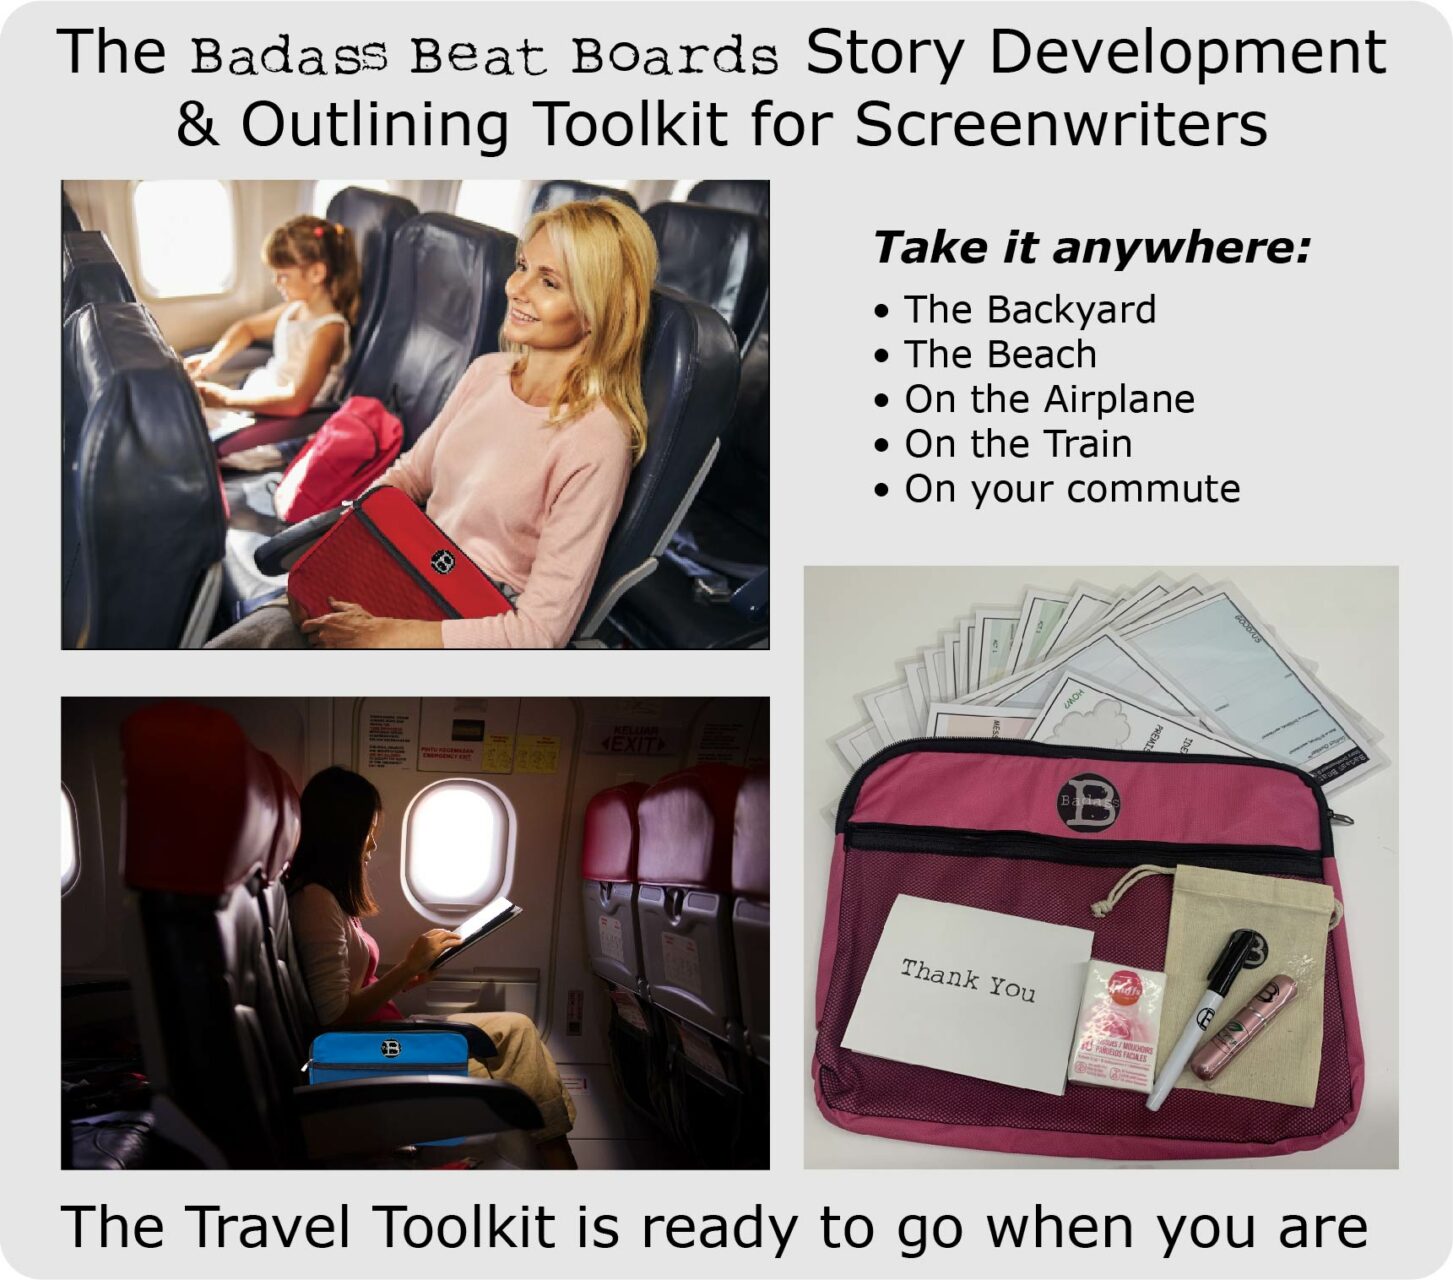 bbb-travel toolkit-take it anywhere